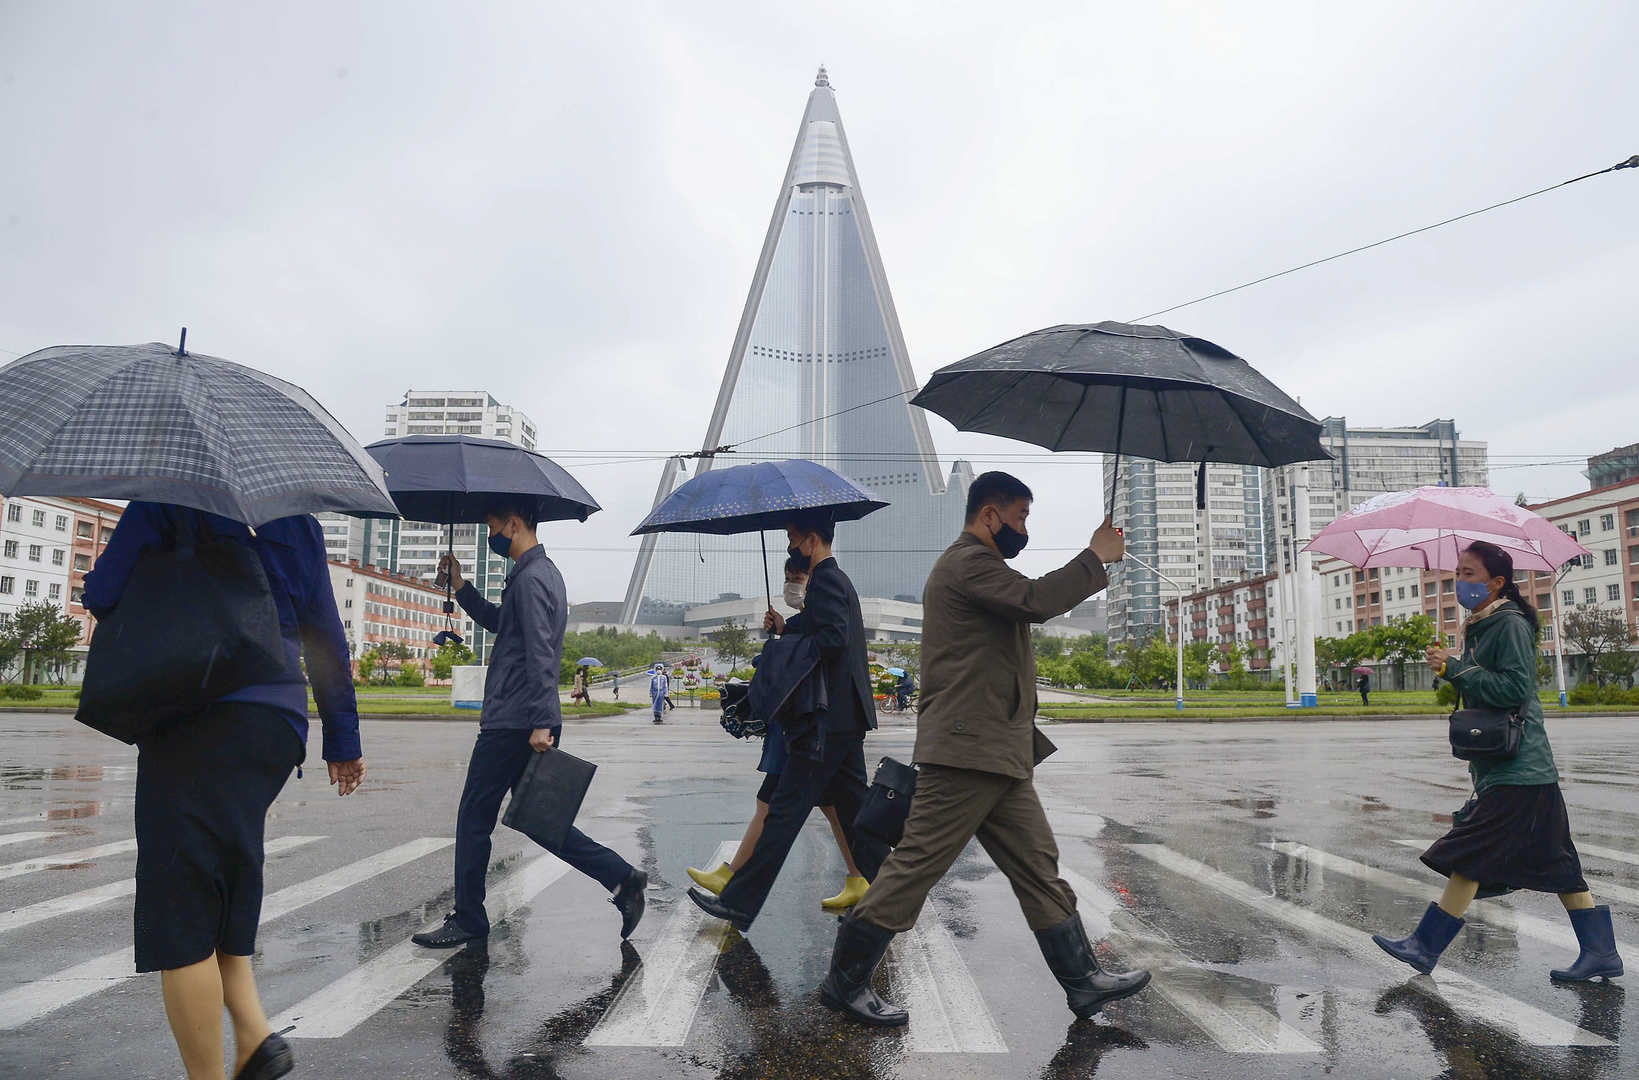 كوريا الشمالية تفرض إجراءات أكثر صرامة في العاصمة لمكافحة كورونا